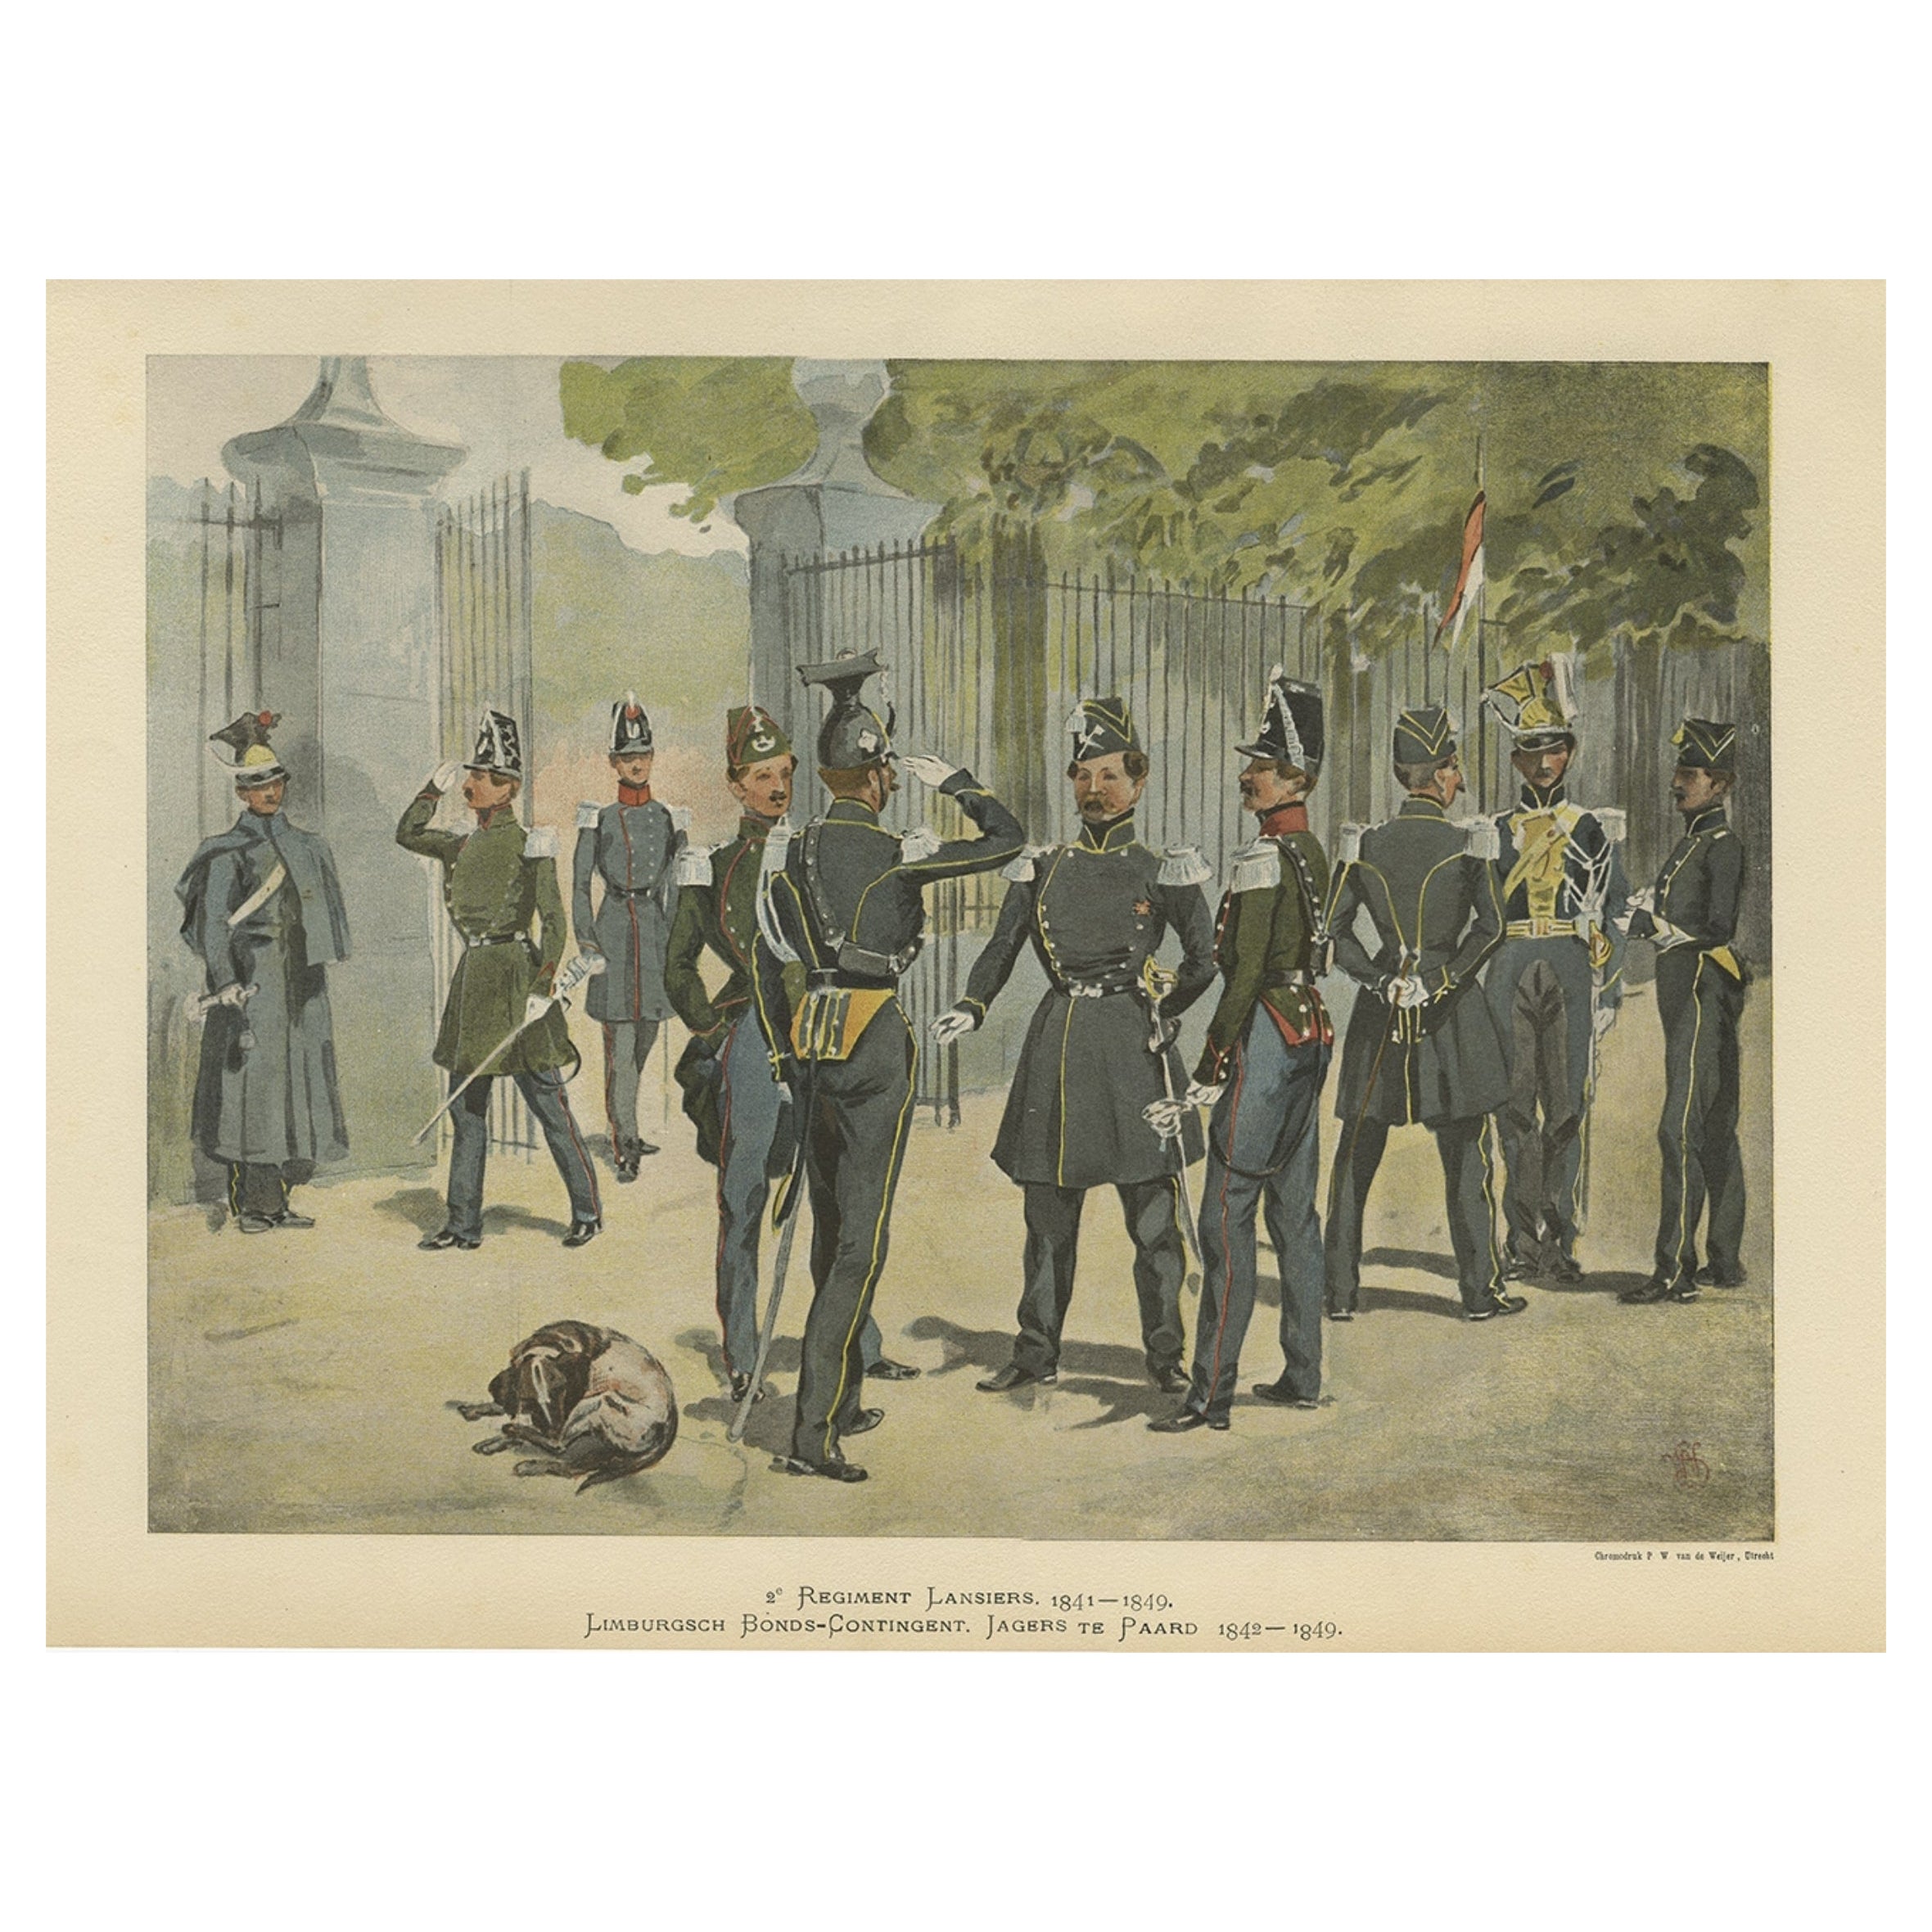 Die Kavallerie der niederländischen und belgischen Armee 1841-1849, veröffentlicht im Jahr 1900